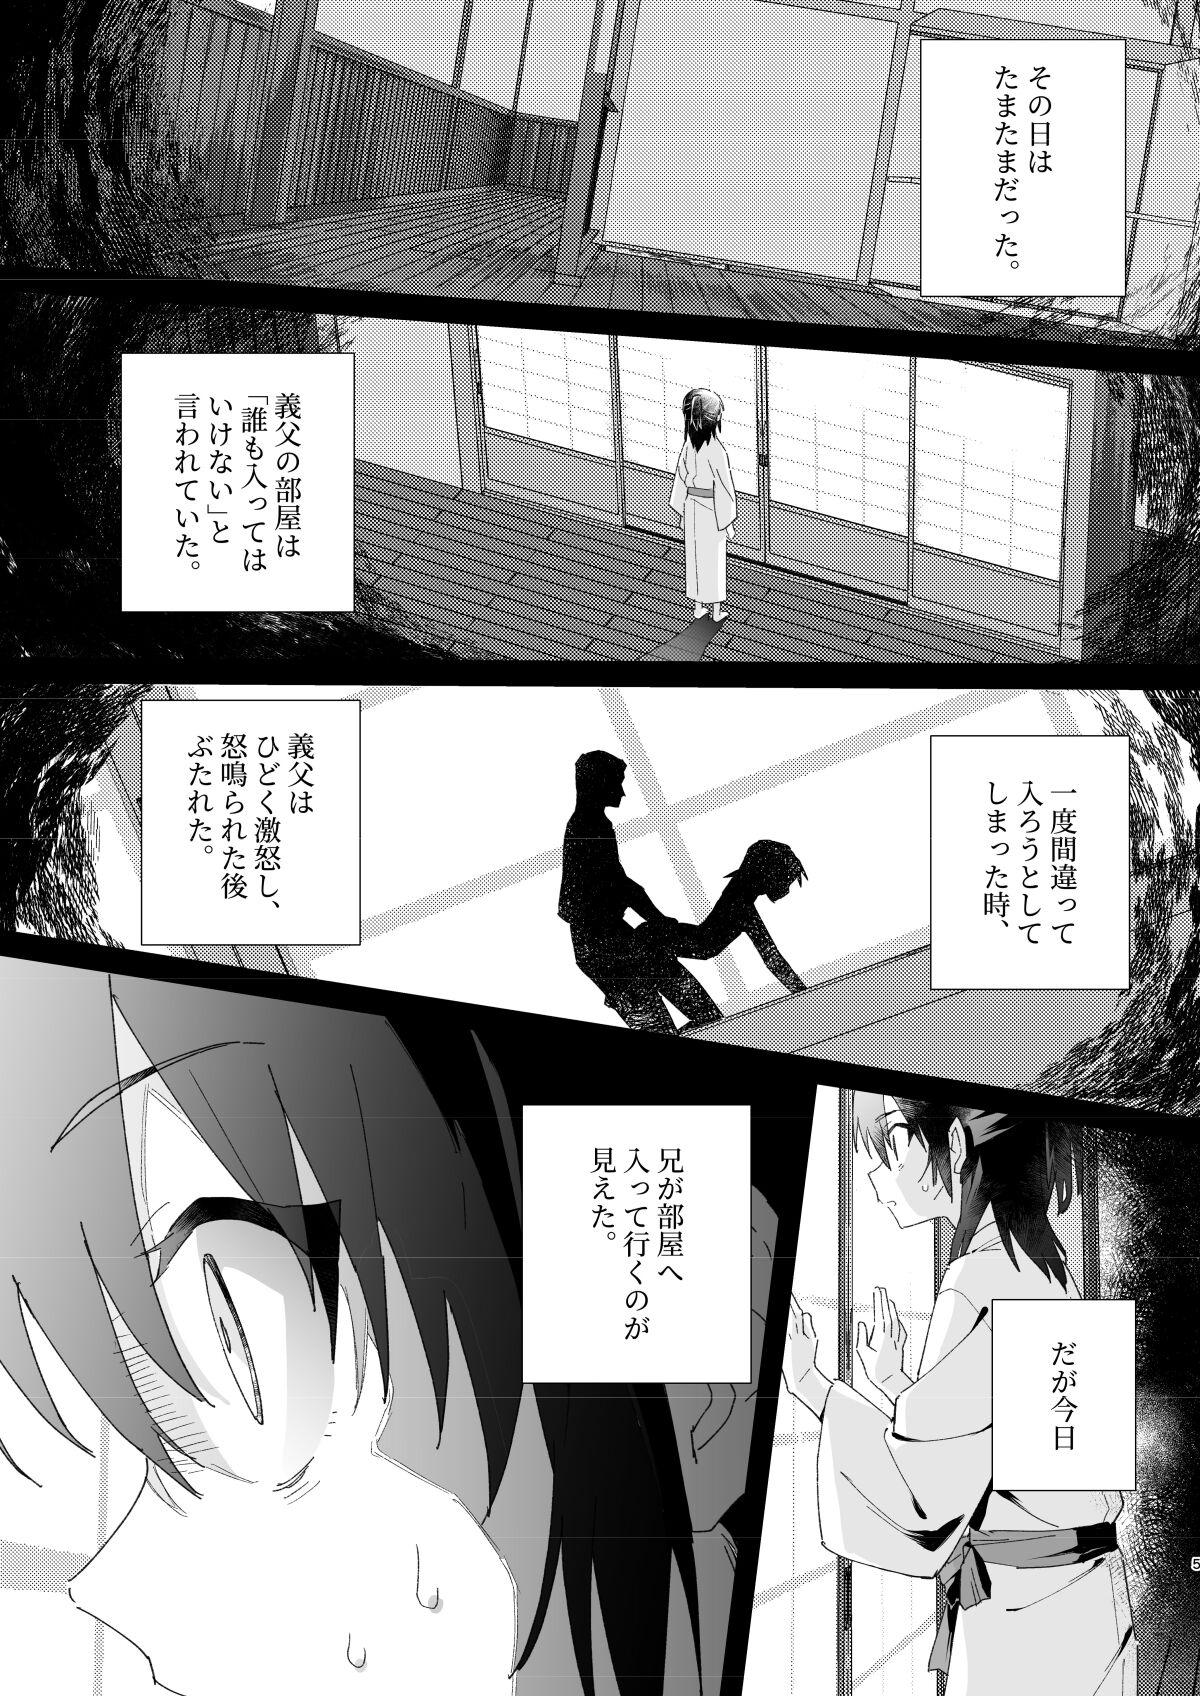 Leite Hīragike no kyōdai - Original Guy - Page 4